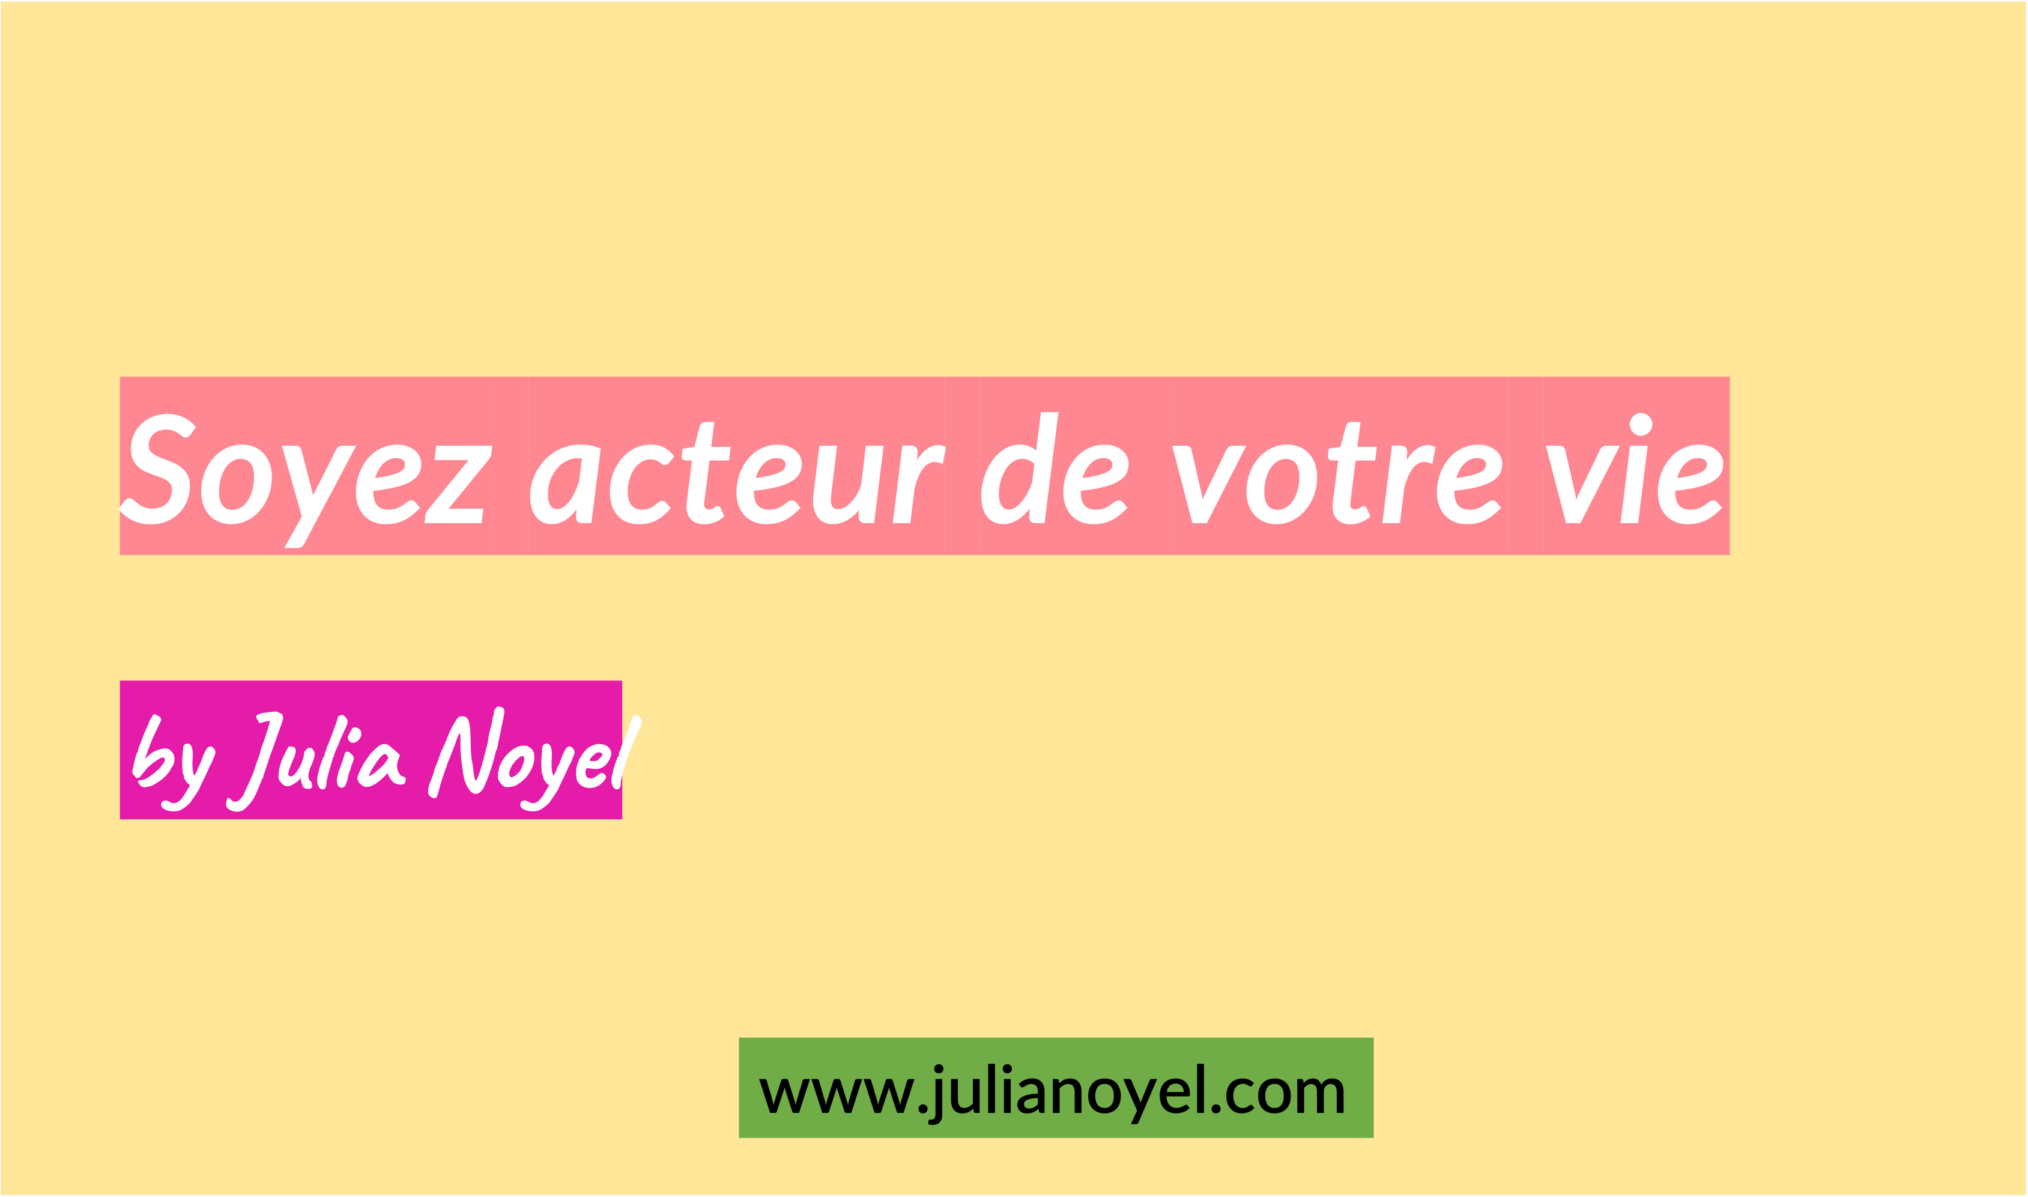 Soyez acteur de votre vie by Julia Noyel